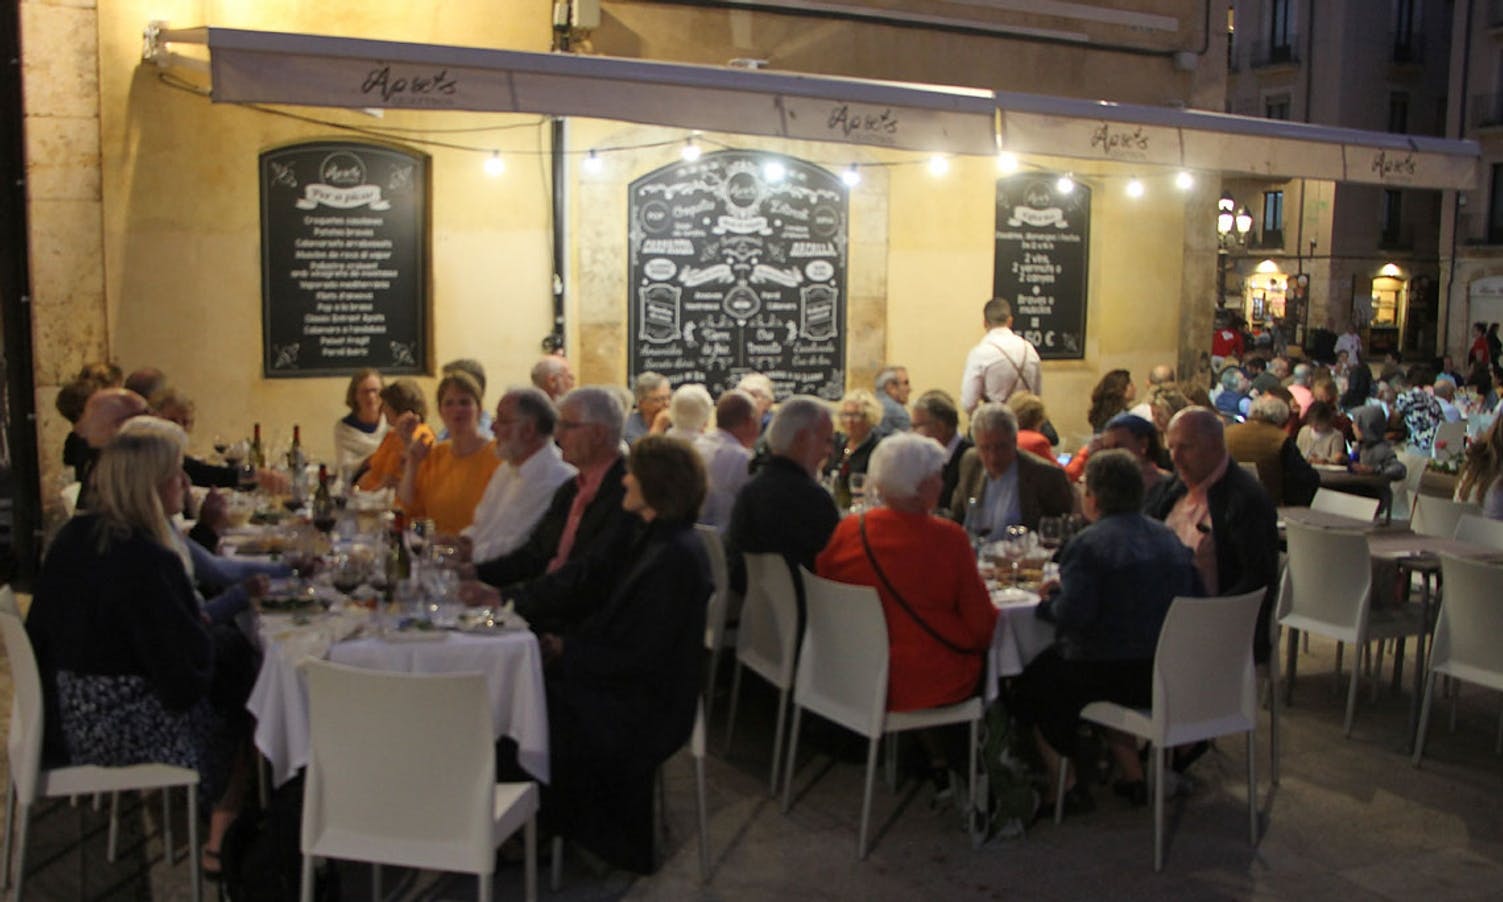 Dei neste dagane var det song ved borda på fleire restaurantar i Tarragona by. (Foto: Os Travel)